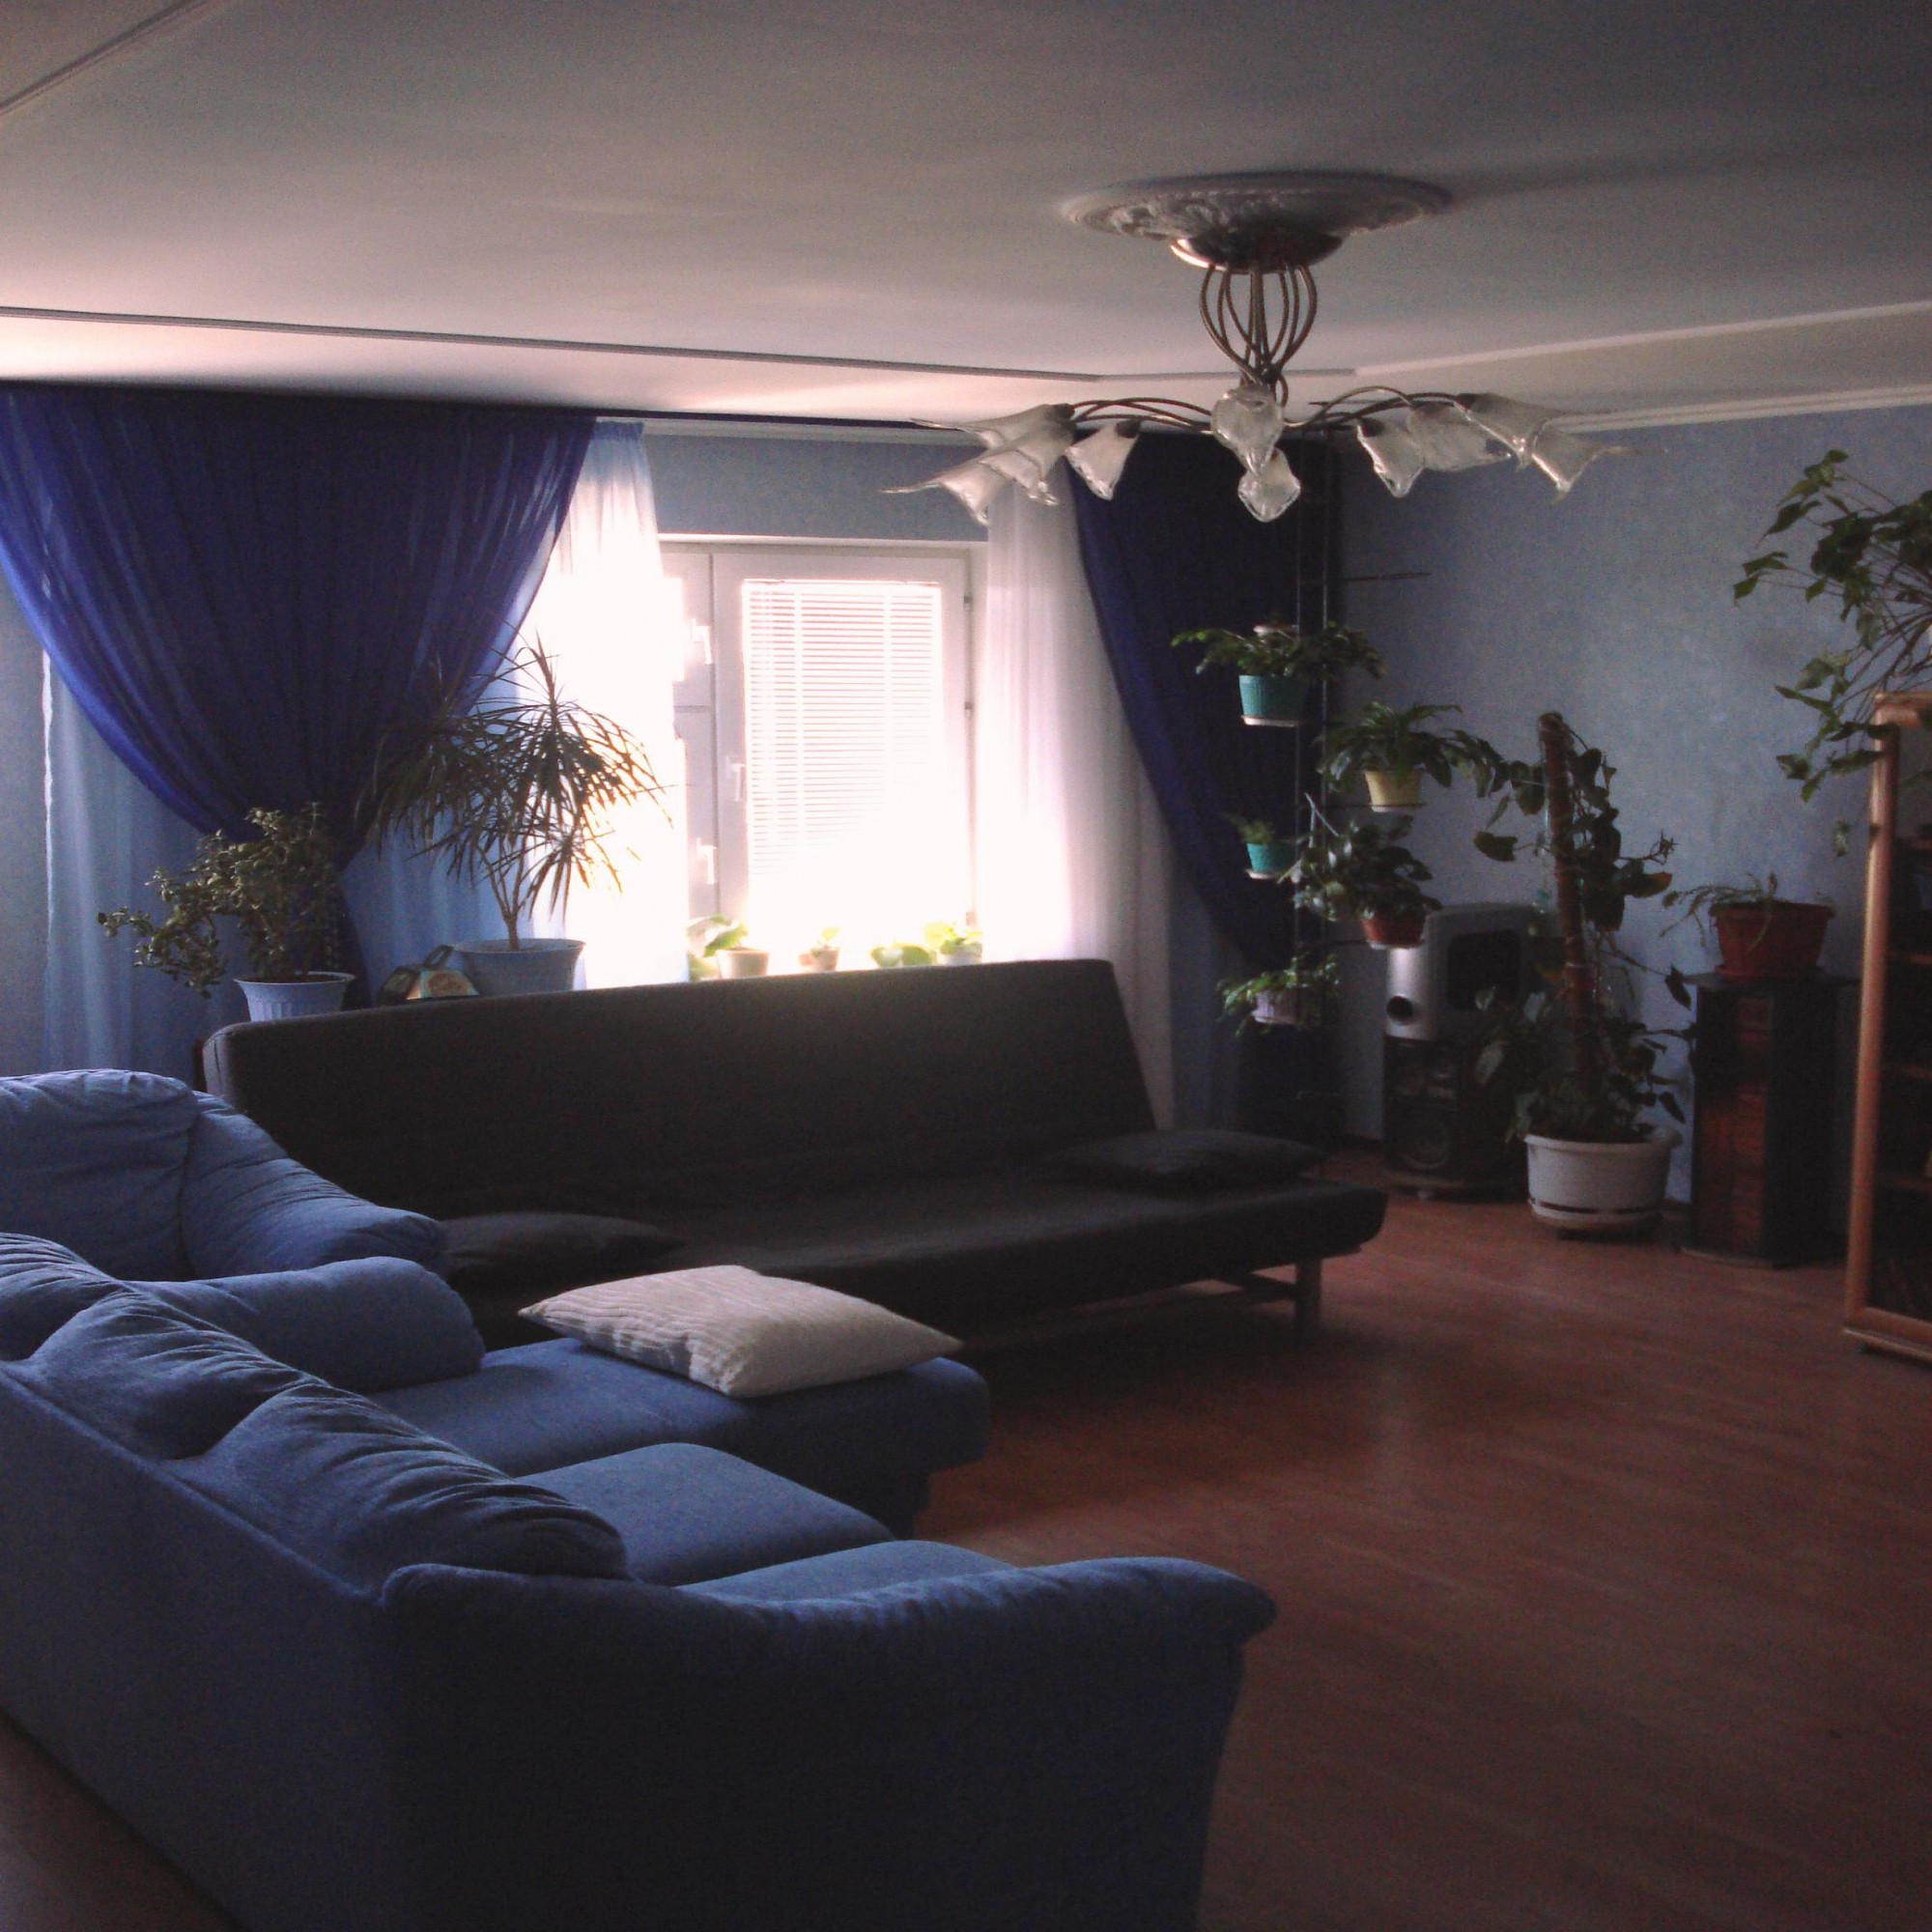 Оформление зала в бело синем цвете